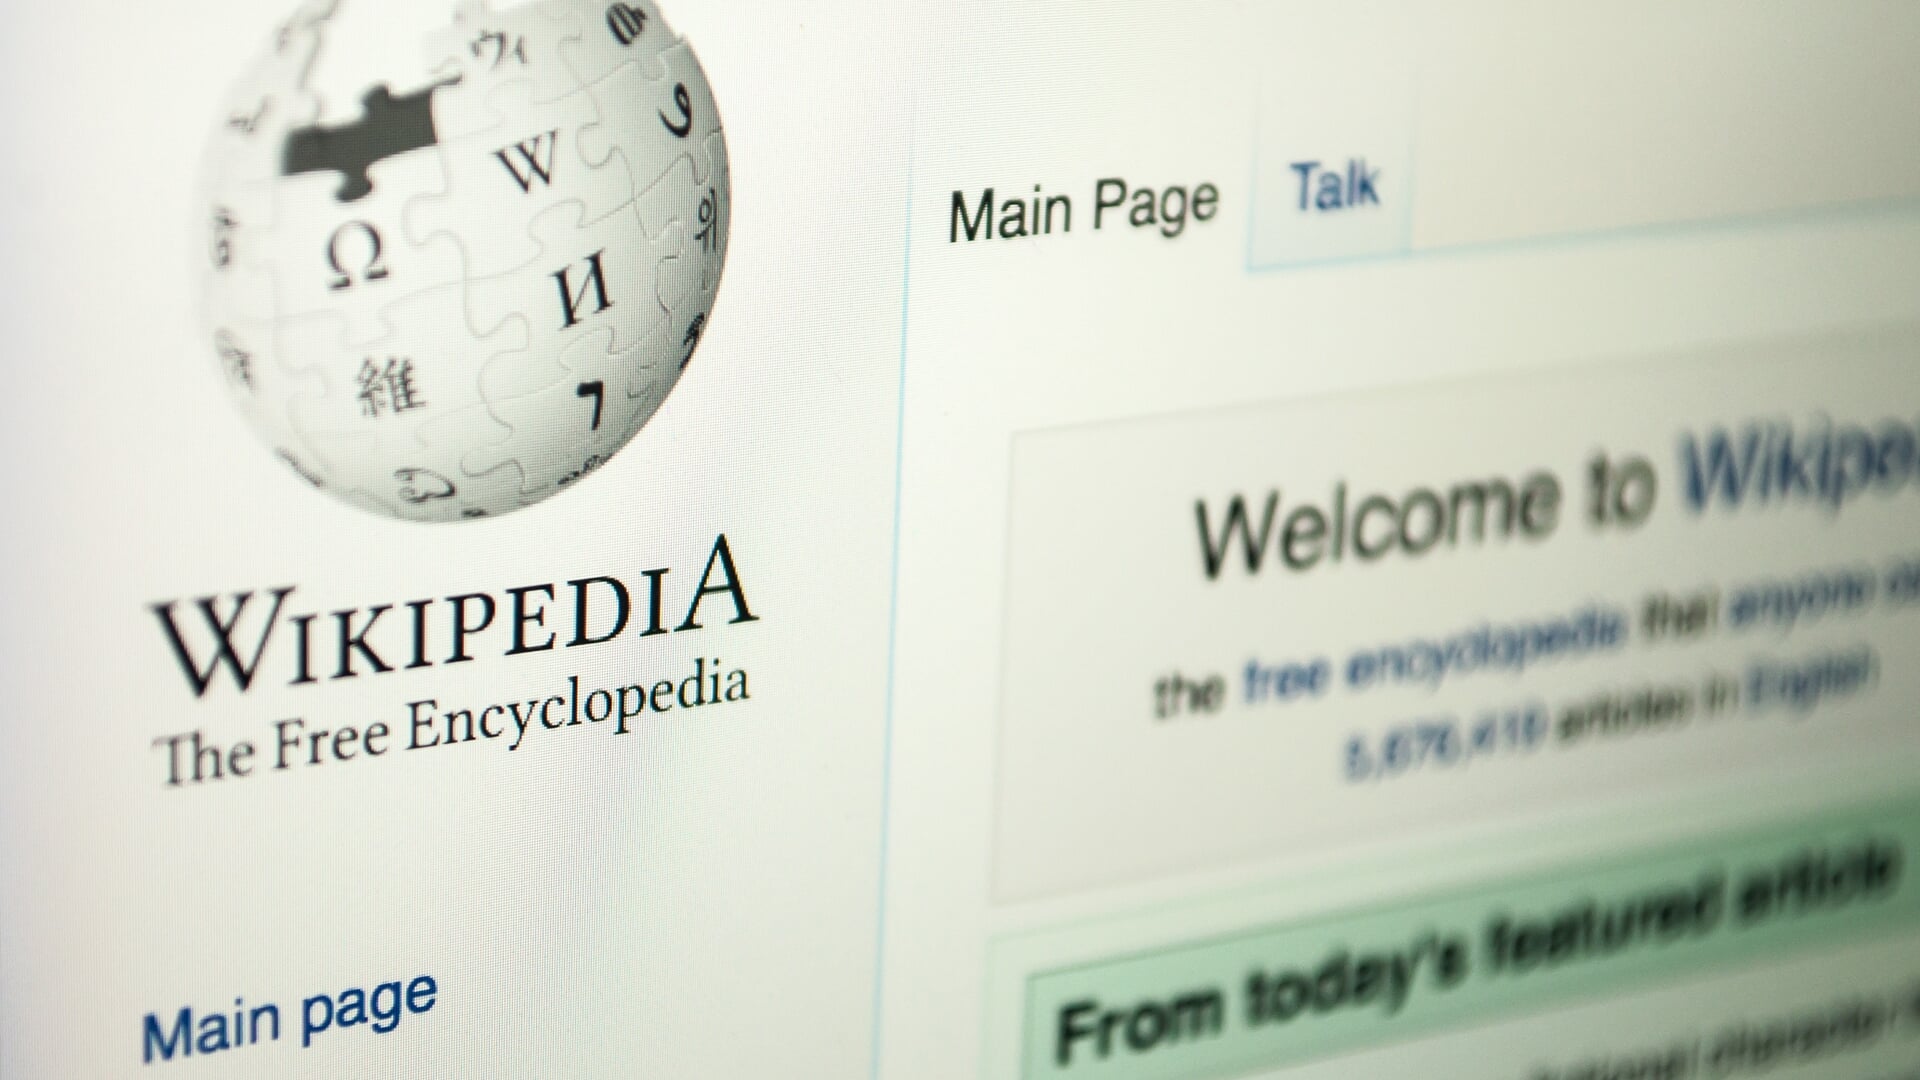 • Bij de bibliotheek wordt een workshop Wikipedia georganiseerd.